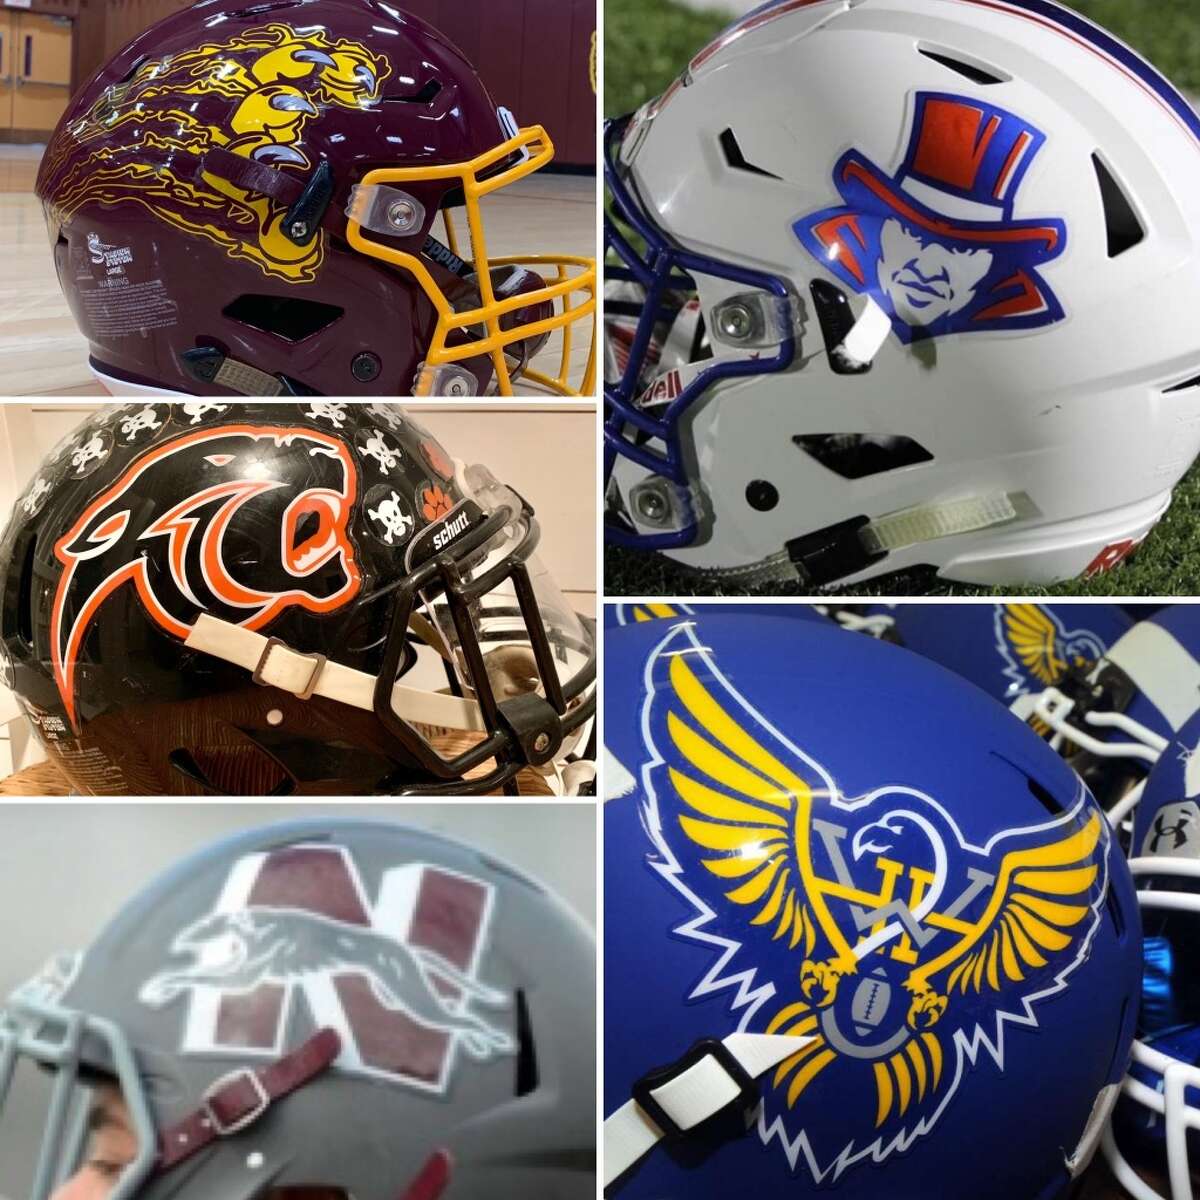 best high school football logos